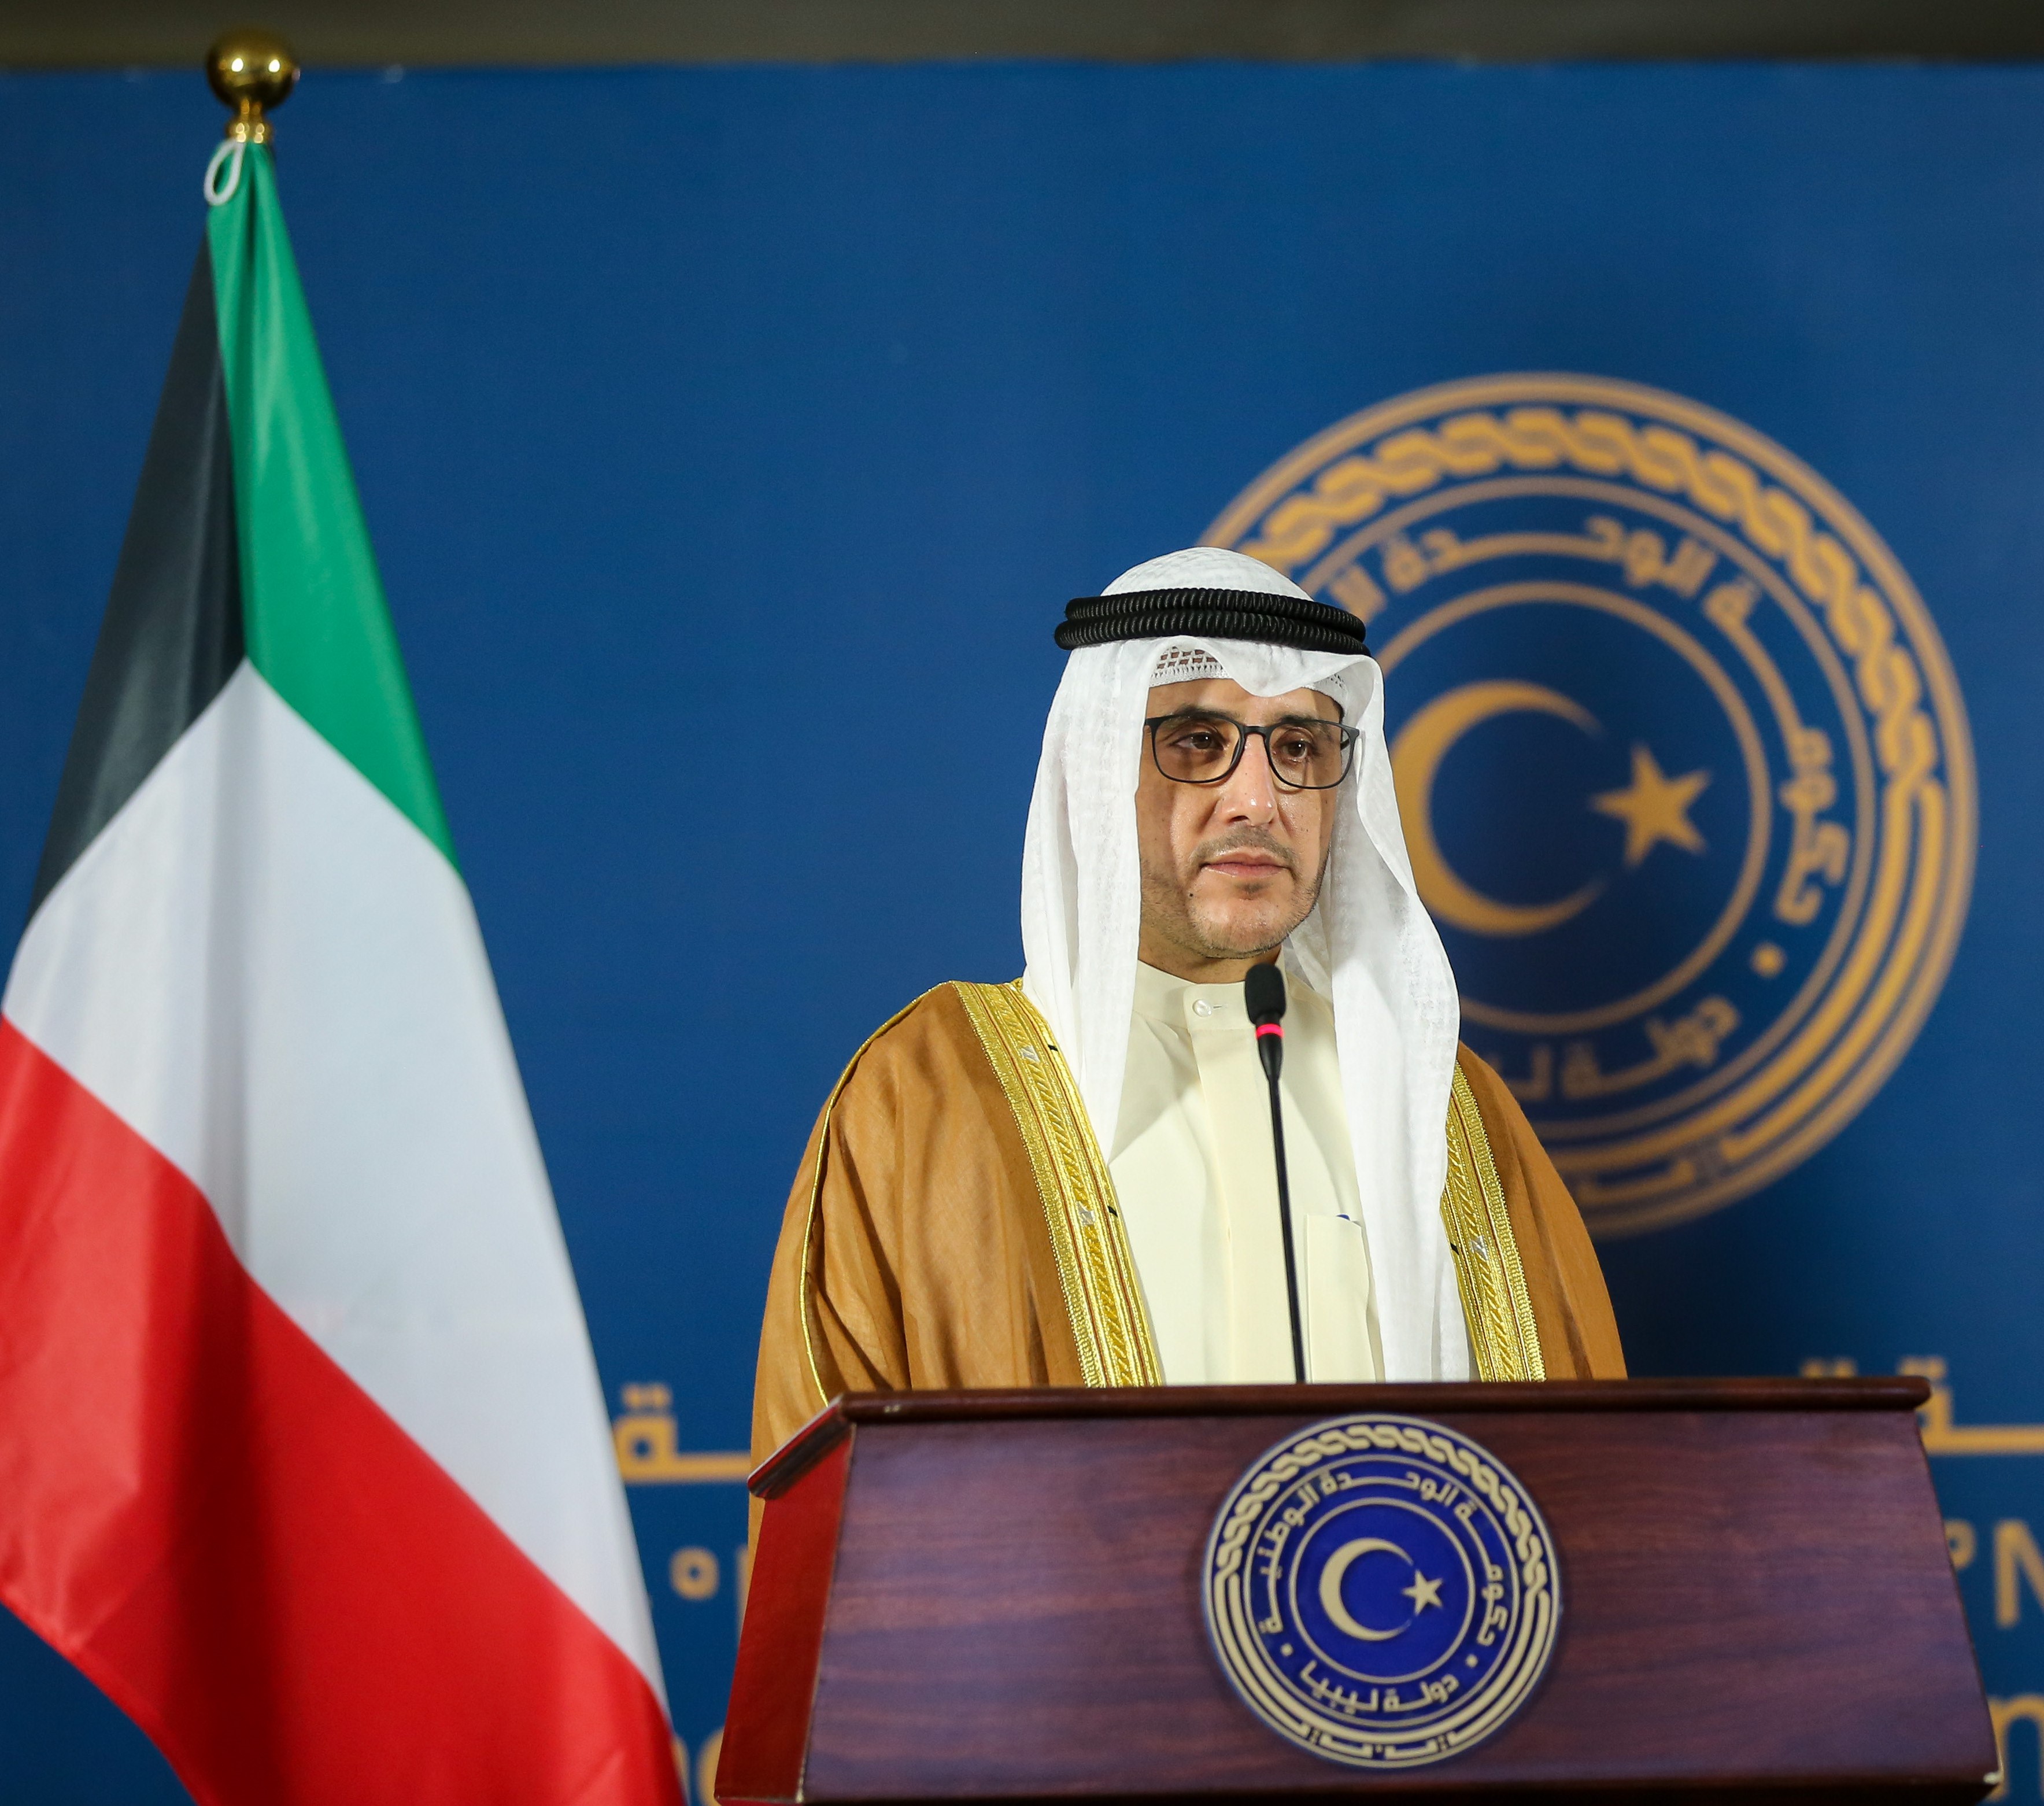 Kuwait's Foreign Minister Sheikh Dr. Ahmad Nasser Al-Mohammad Al-Sabah